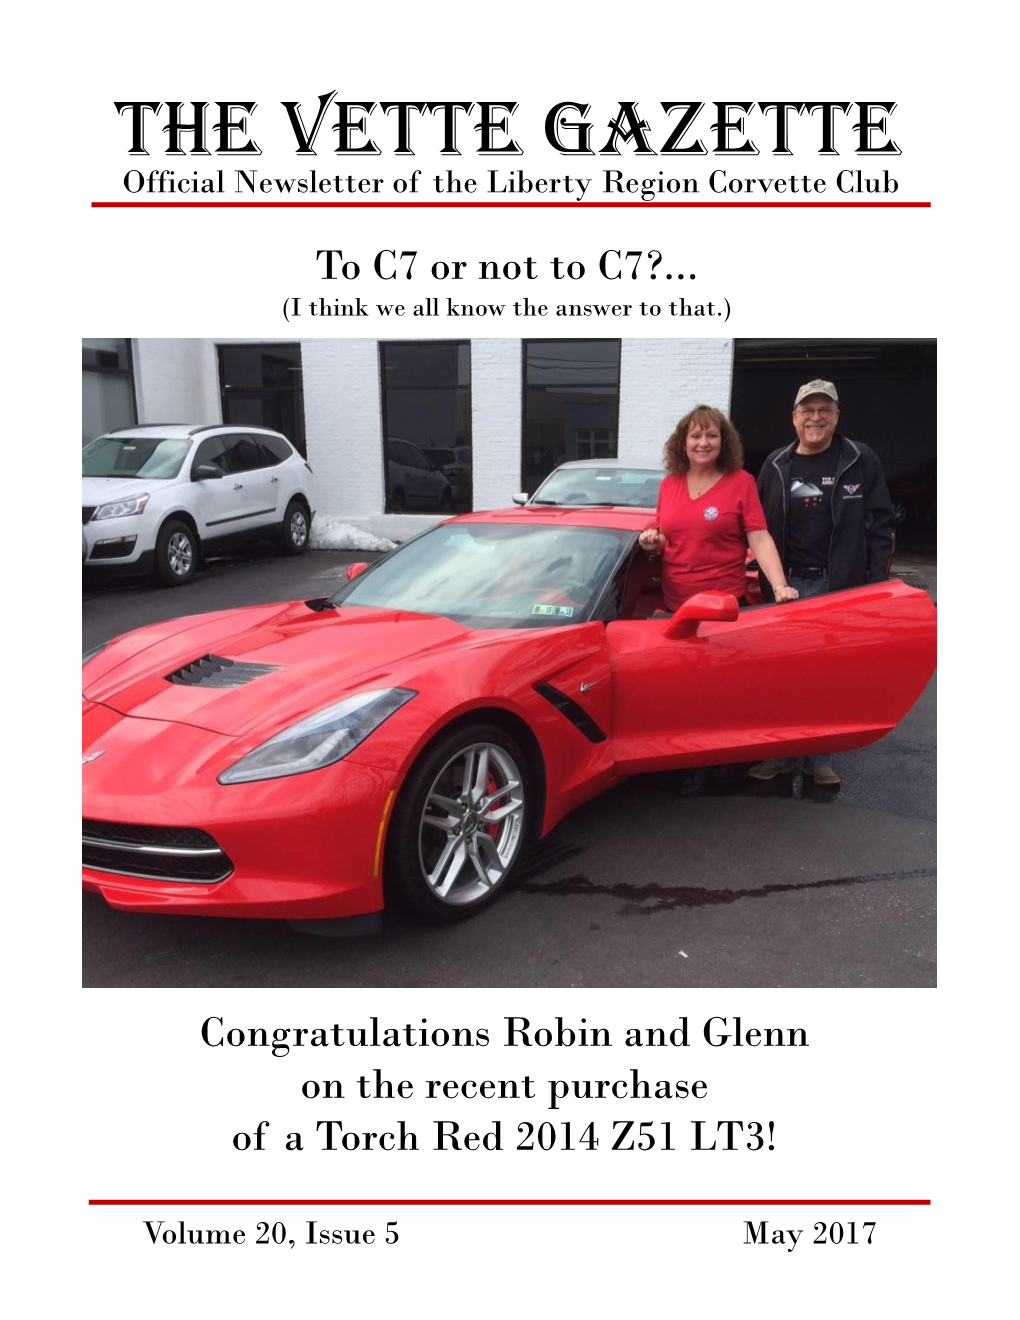 The Vette Gazette Official Newsletter of the Liberty Region Corvette Club